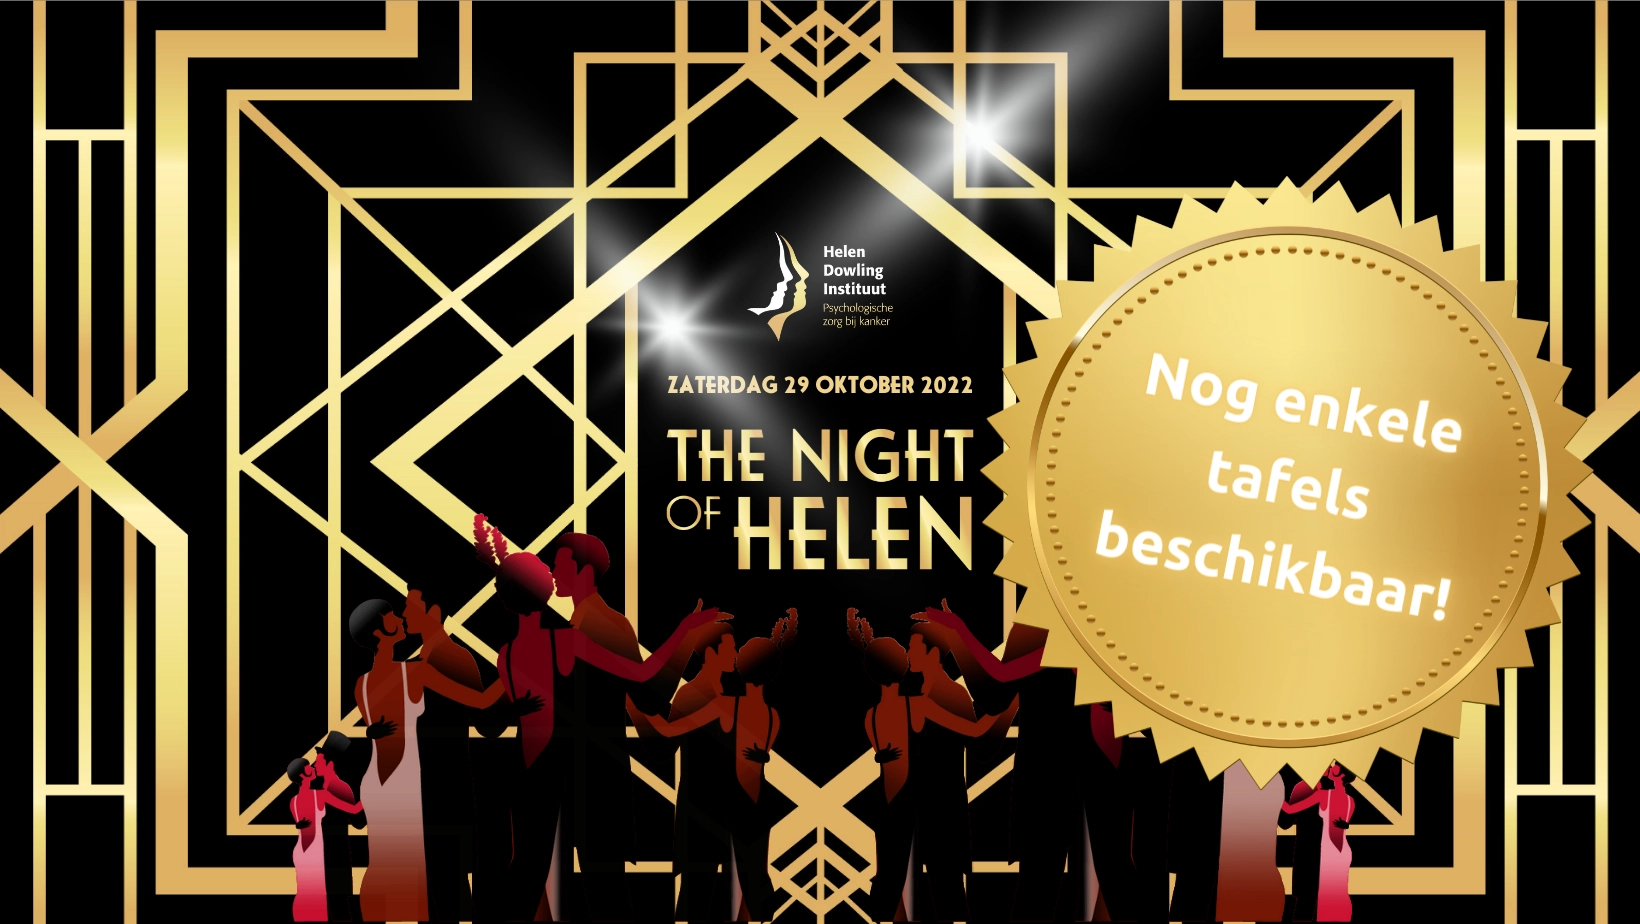 Uitnodiging voor Aan Tafel Met het HDI 2022 The Night of Helen. Nog enkele tafels beschikbaar.